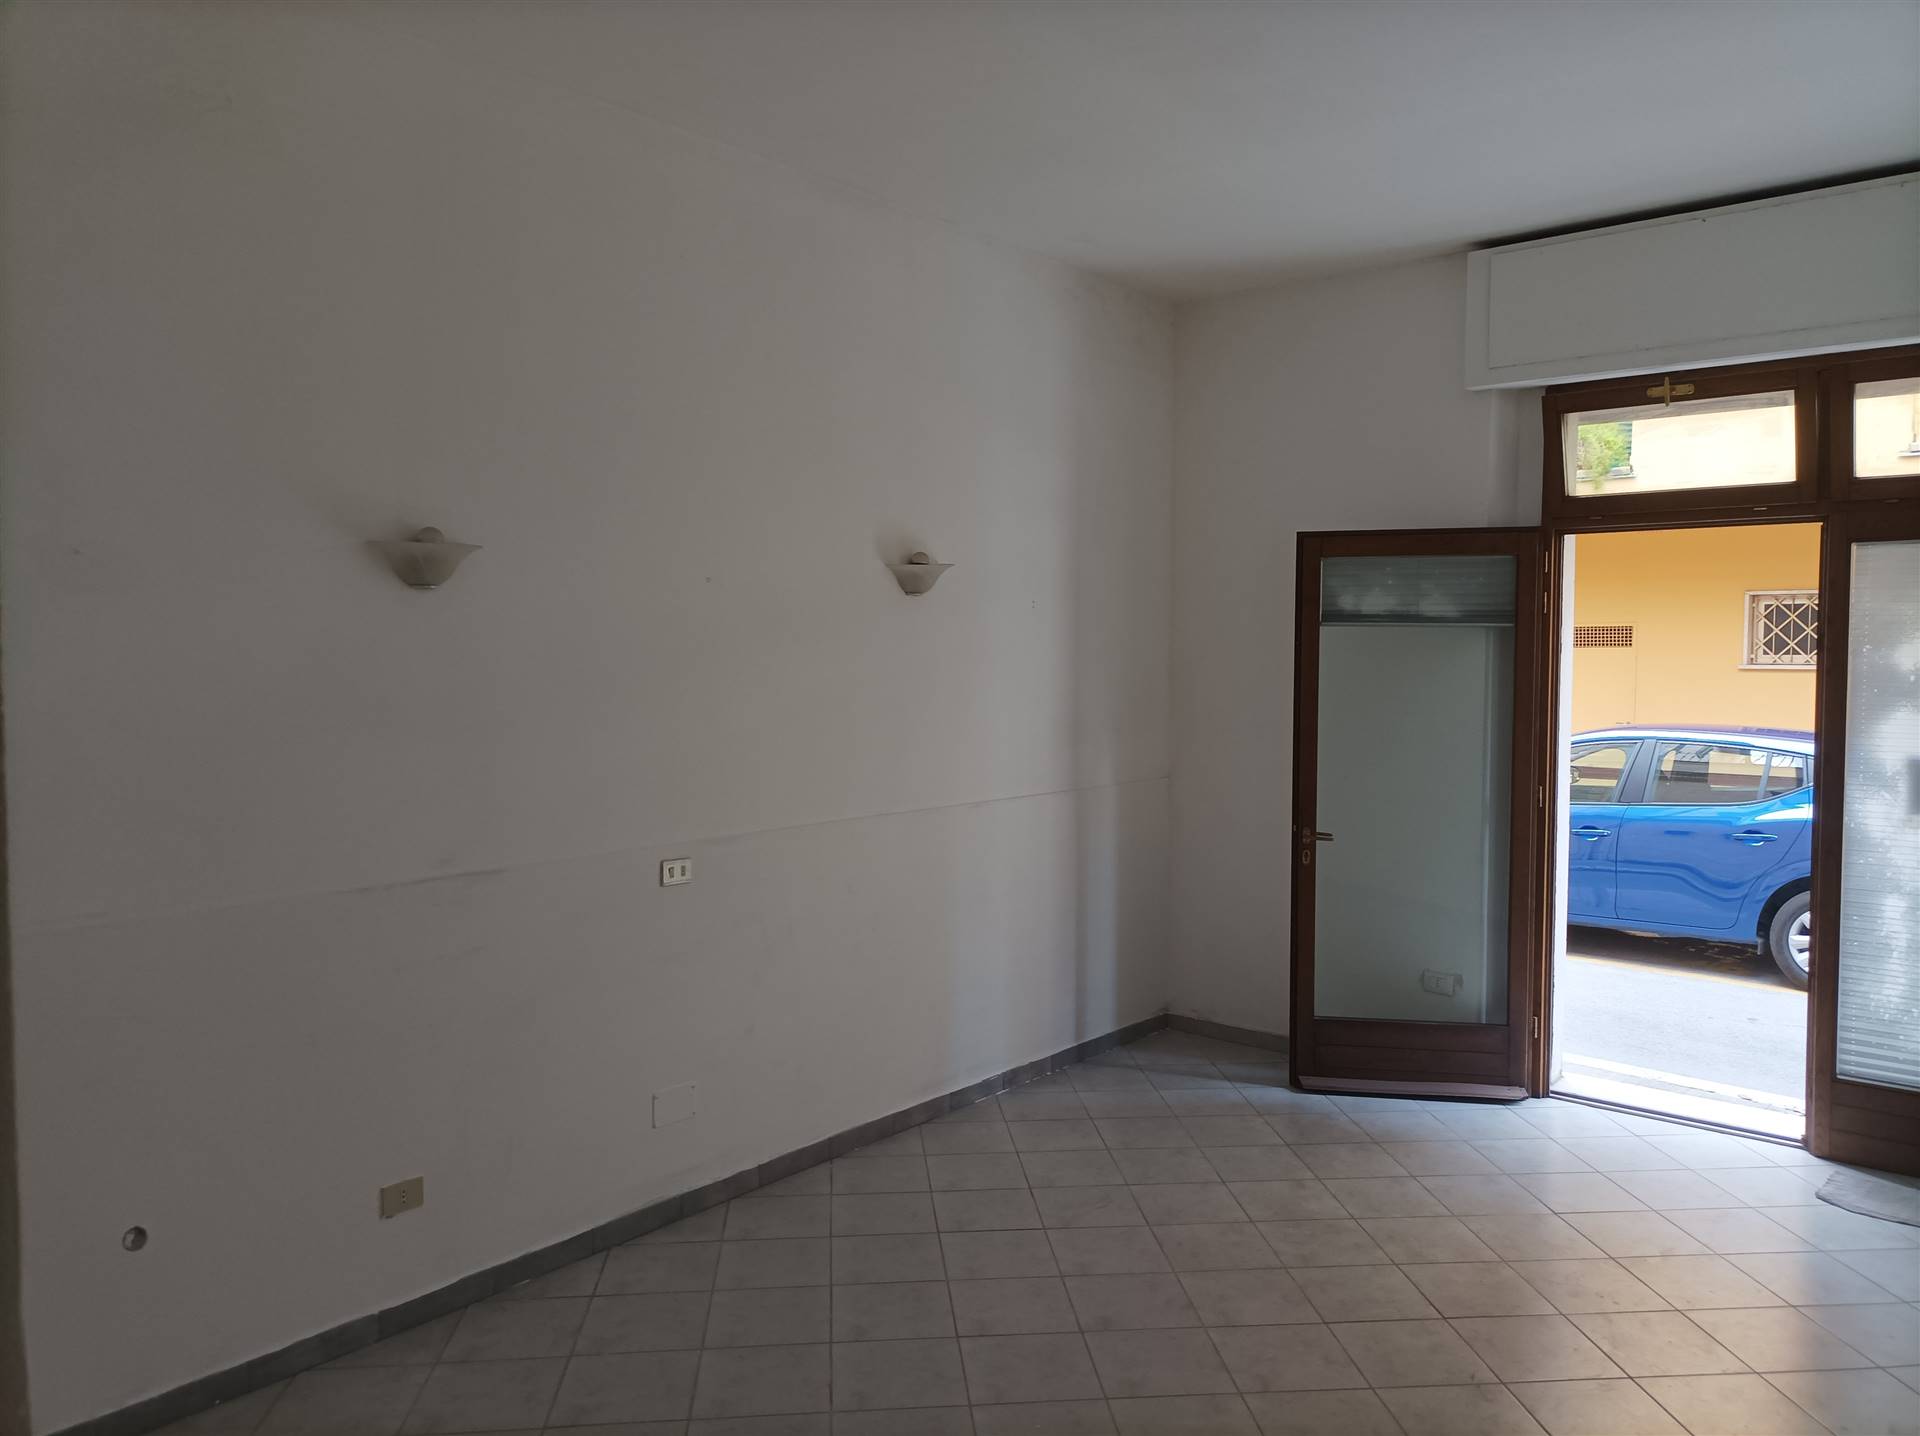 Appartamento in vendita a Montecatini-Terme, 2 locali, prezzo € 65.000 | PortaleAgenzieImmobiliari.it